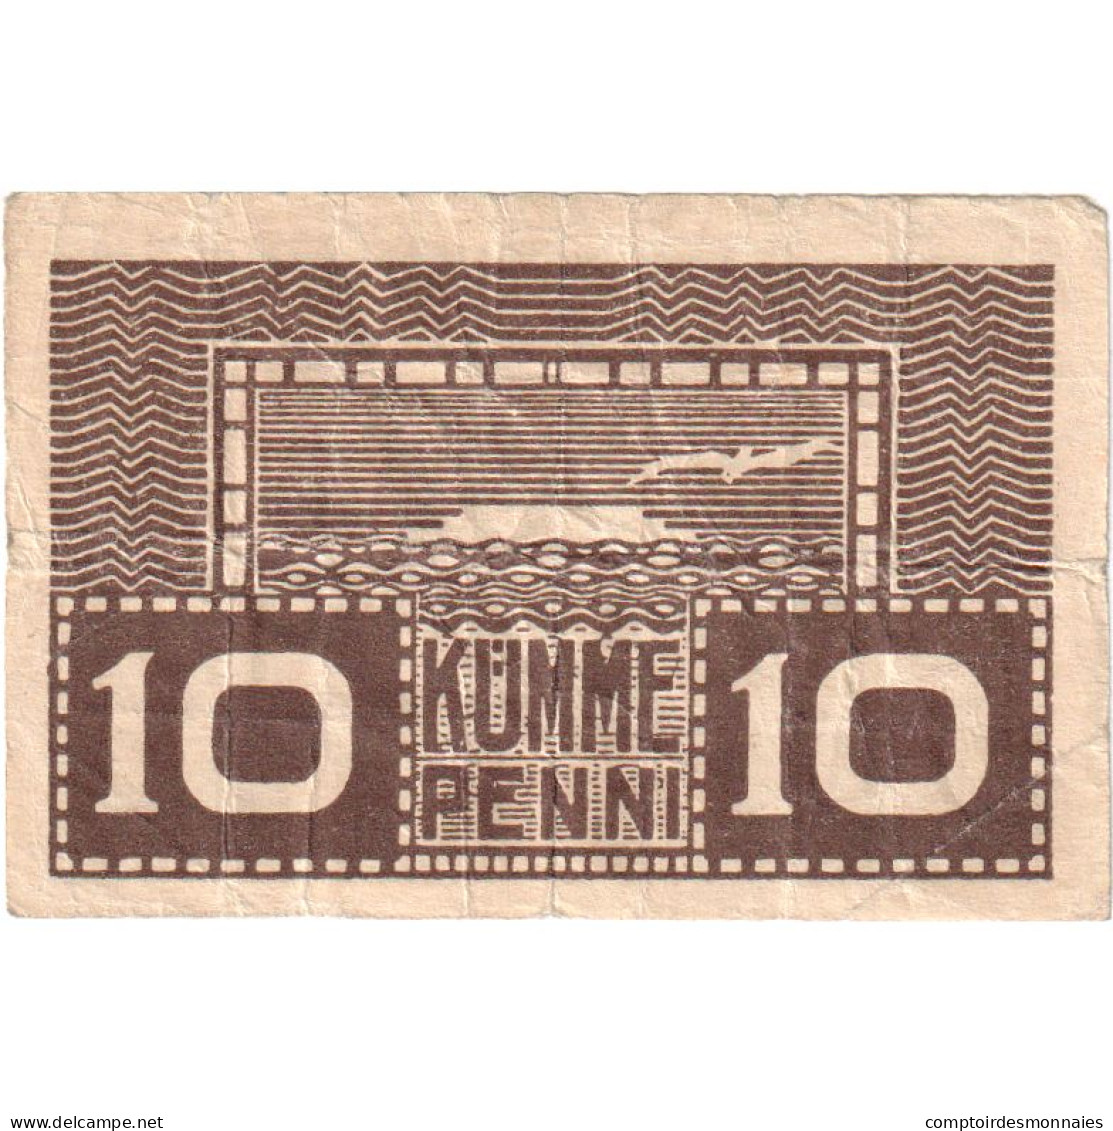 Estonie, 10 Penni, 1919, KM:40b, TTB - Estland